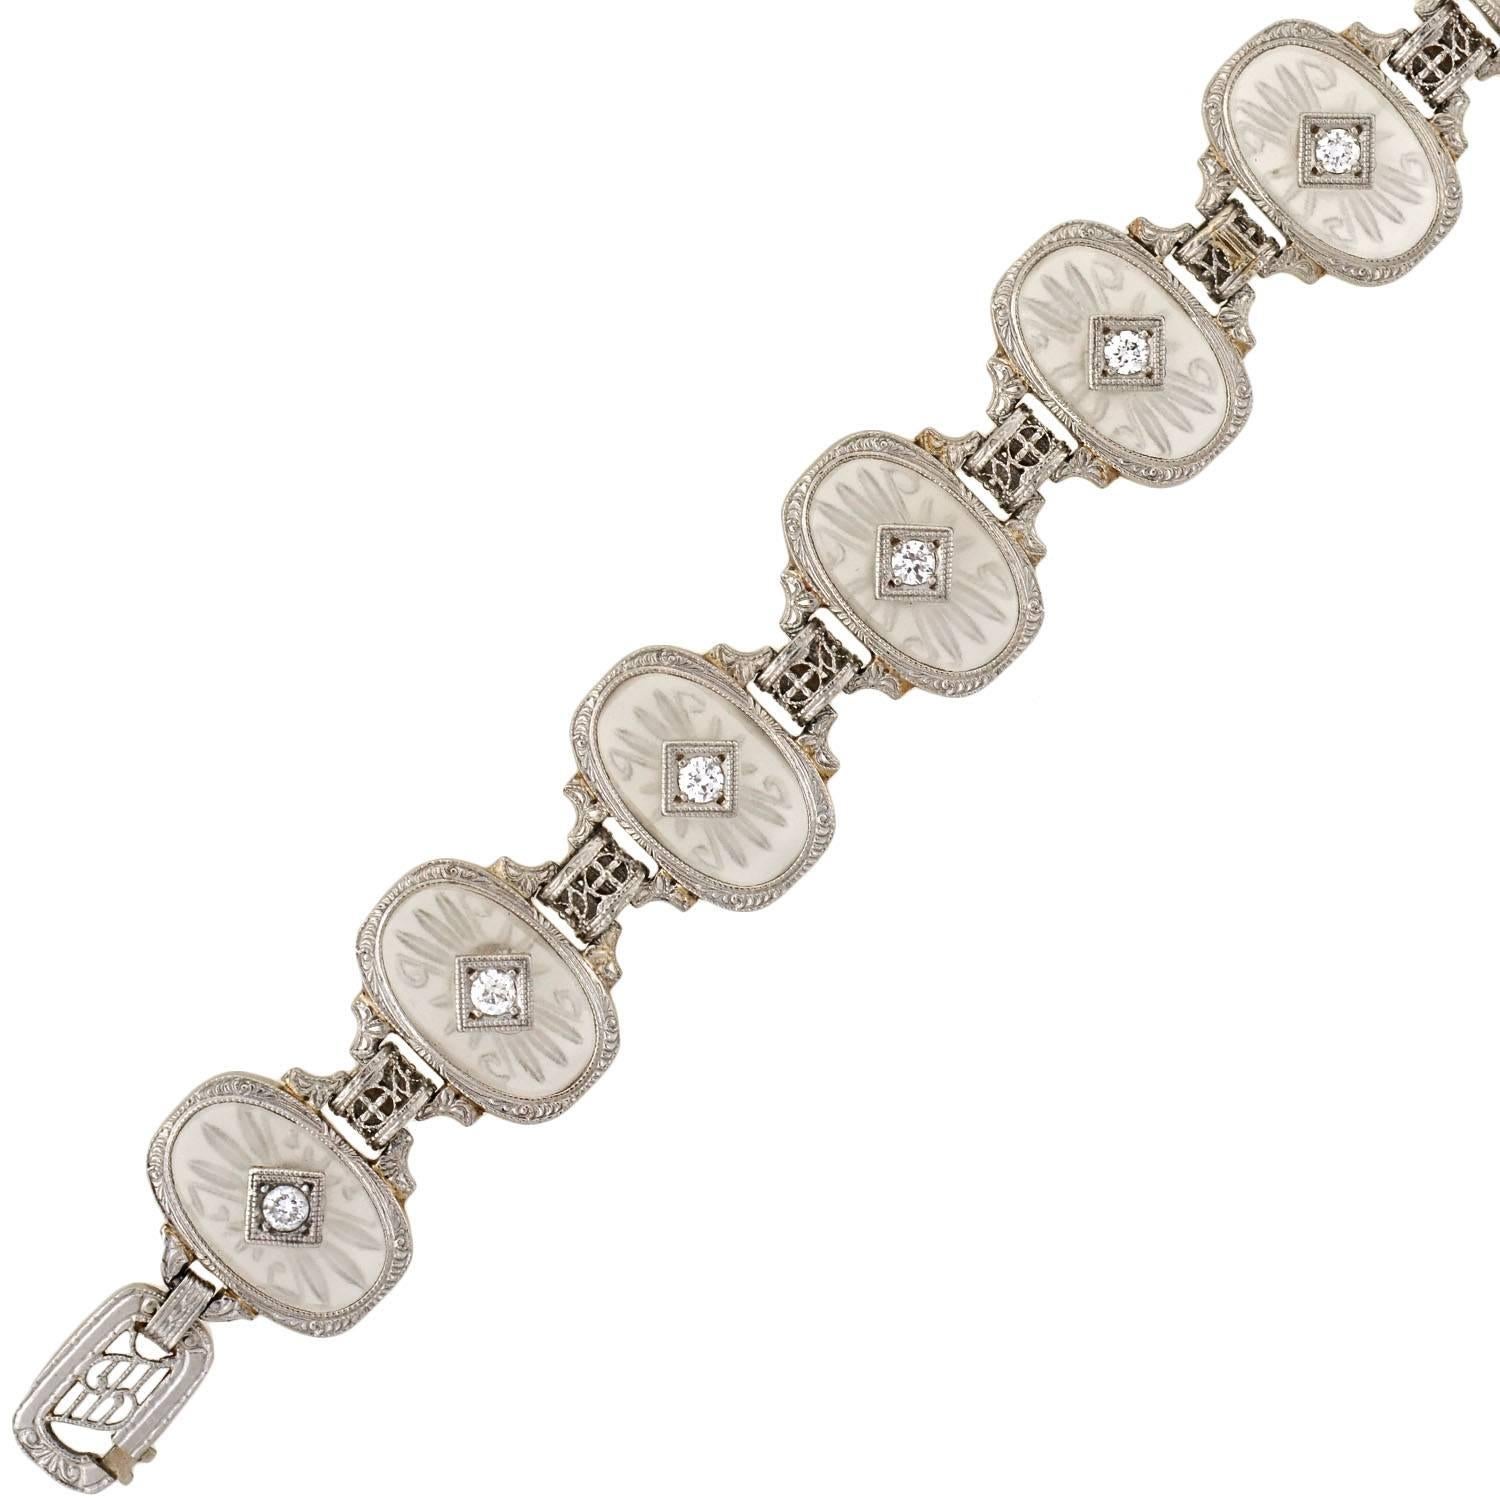 Ce magnifique bracelet en cristal de quartz de roche a été fabriqué par Krementz durant l'ère Art Déco (ca1920) ! La monture en or blanc de 14 carats est surmontée de platine, et présente une rangée de maillons en cristal de quartz de roche. De